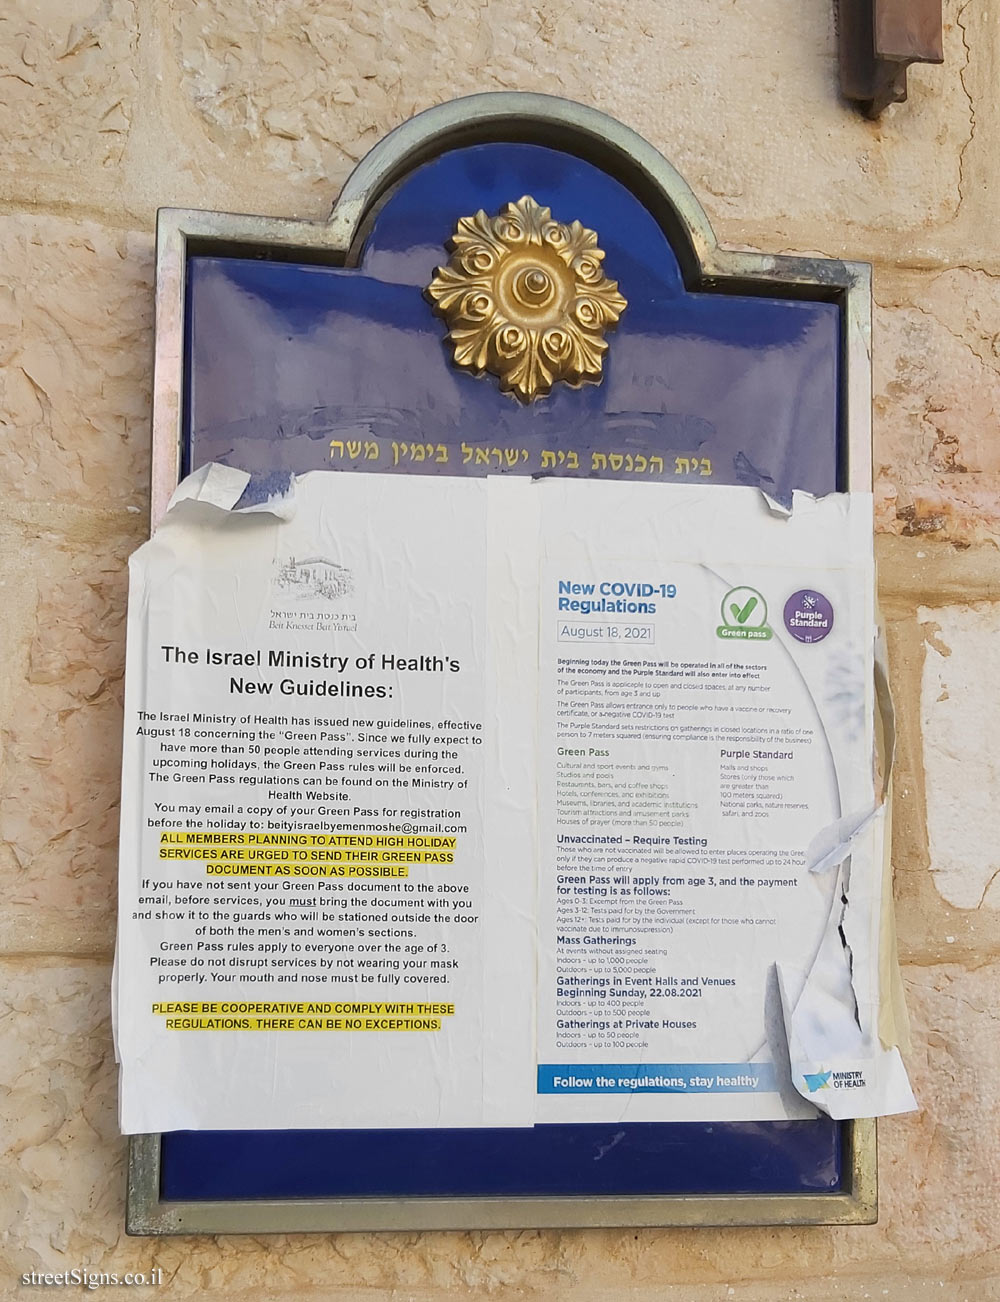 Jerusalem - The Built Heritage - The Beit Yisrael synagogue on Yemin Moshe